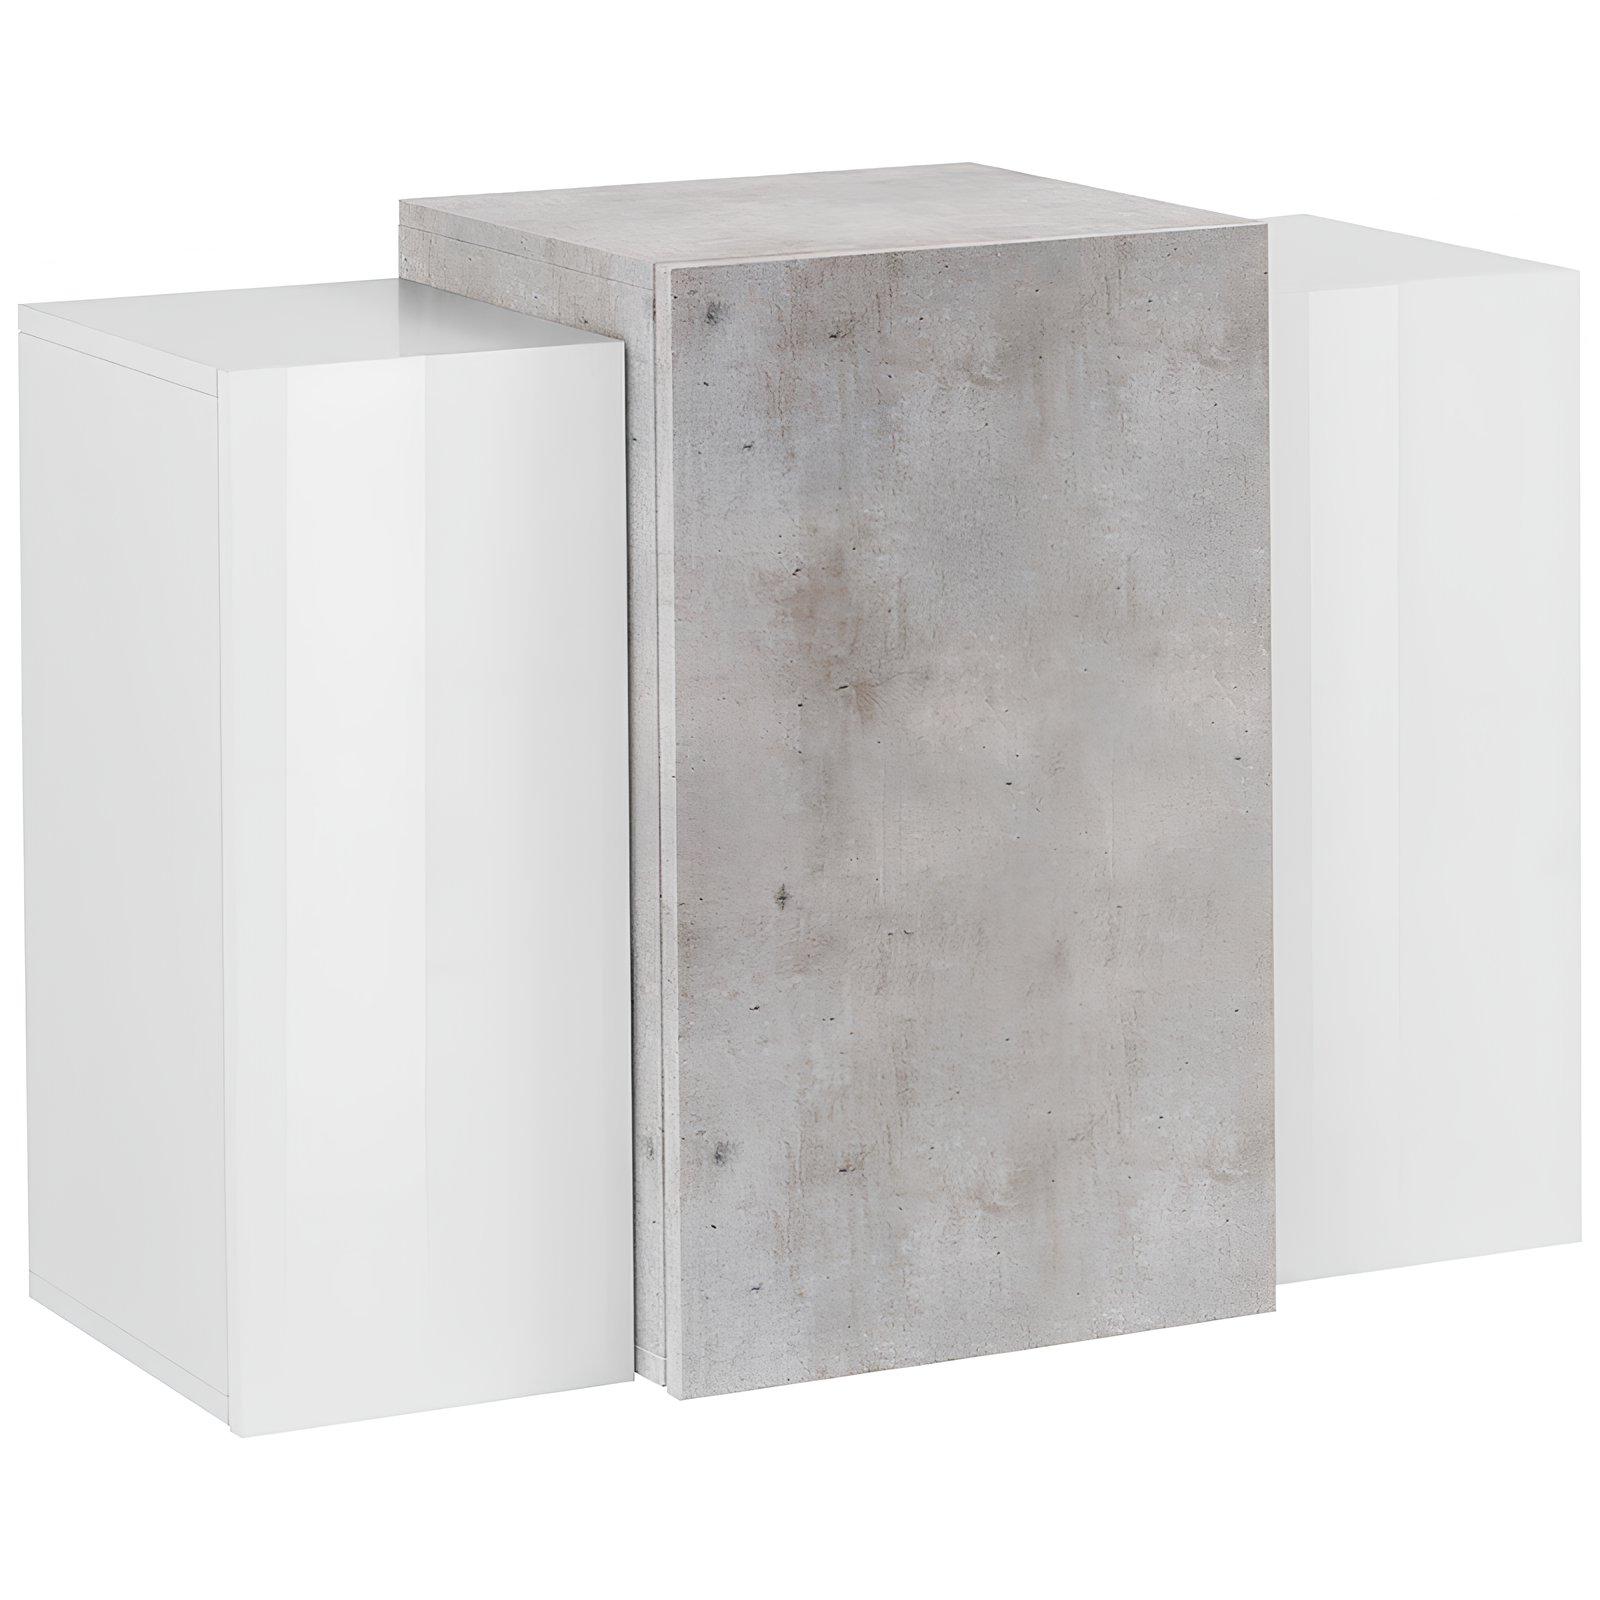 Pensile 90x65,5 H da parete design moderno in legno Bianco lucido cemento con 3 ante e ripiani interni - Cori